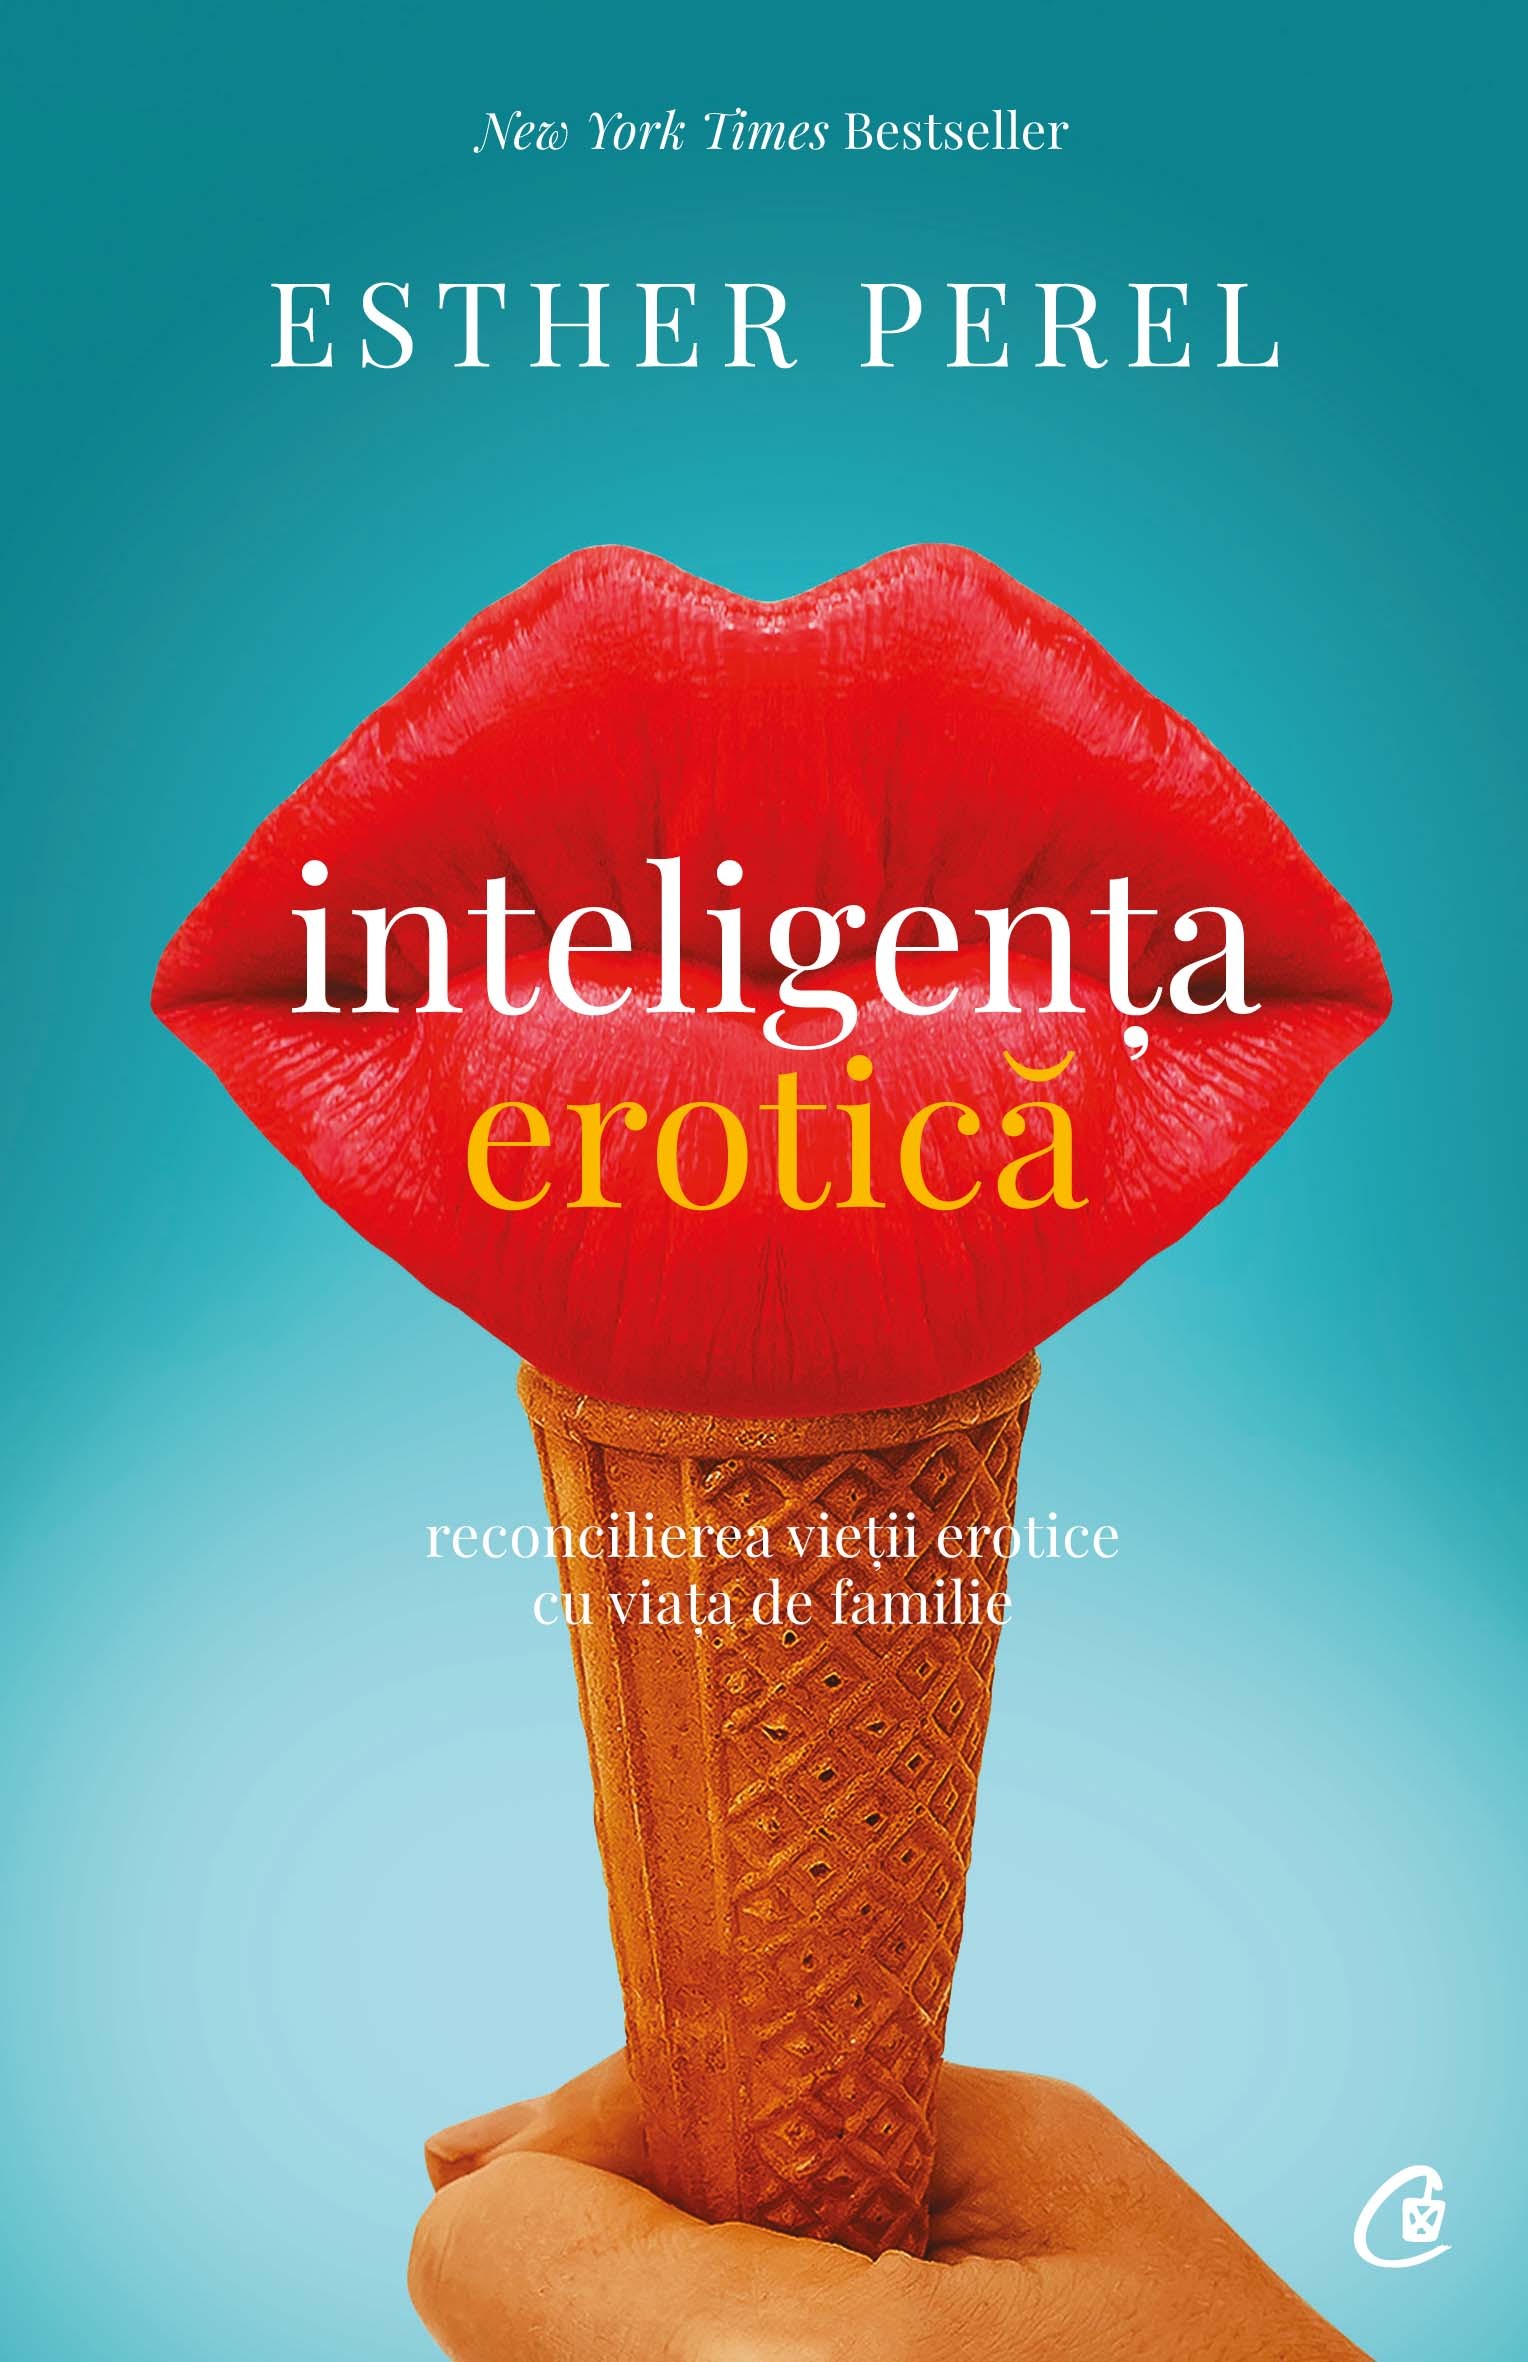 Coperta cărții: Inteligenta erotica - lonnieyoungblood.com